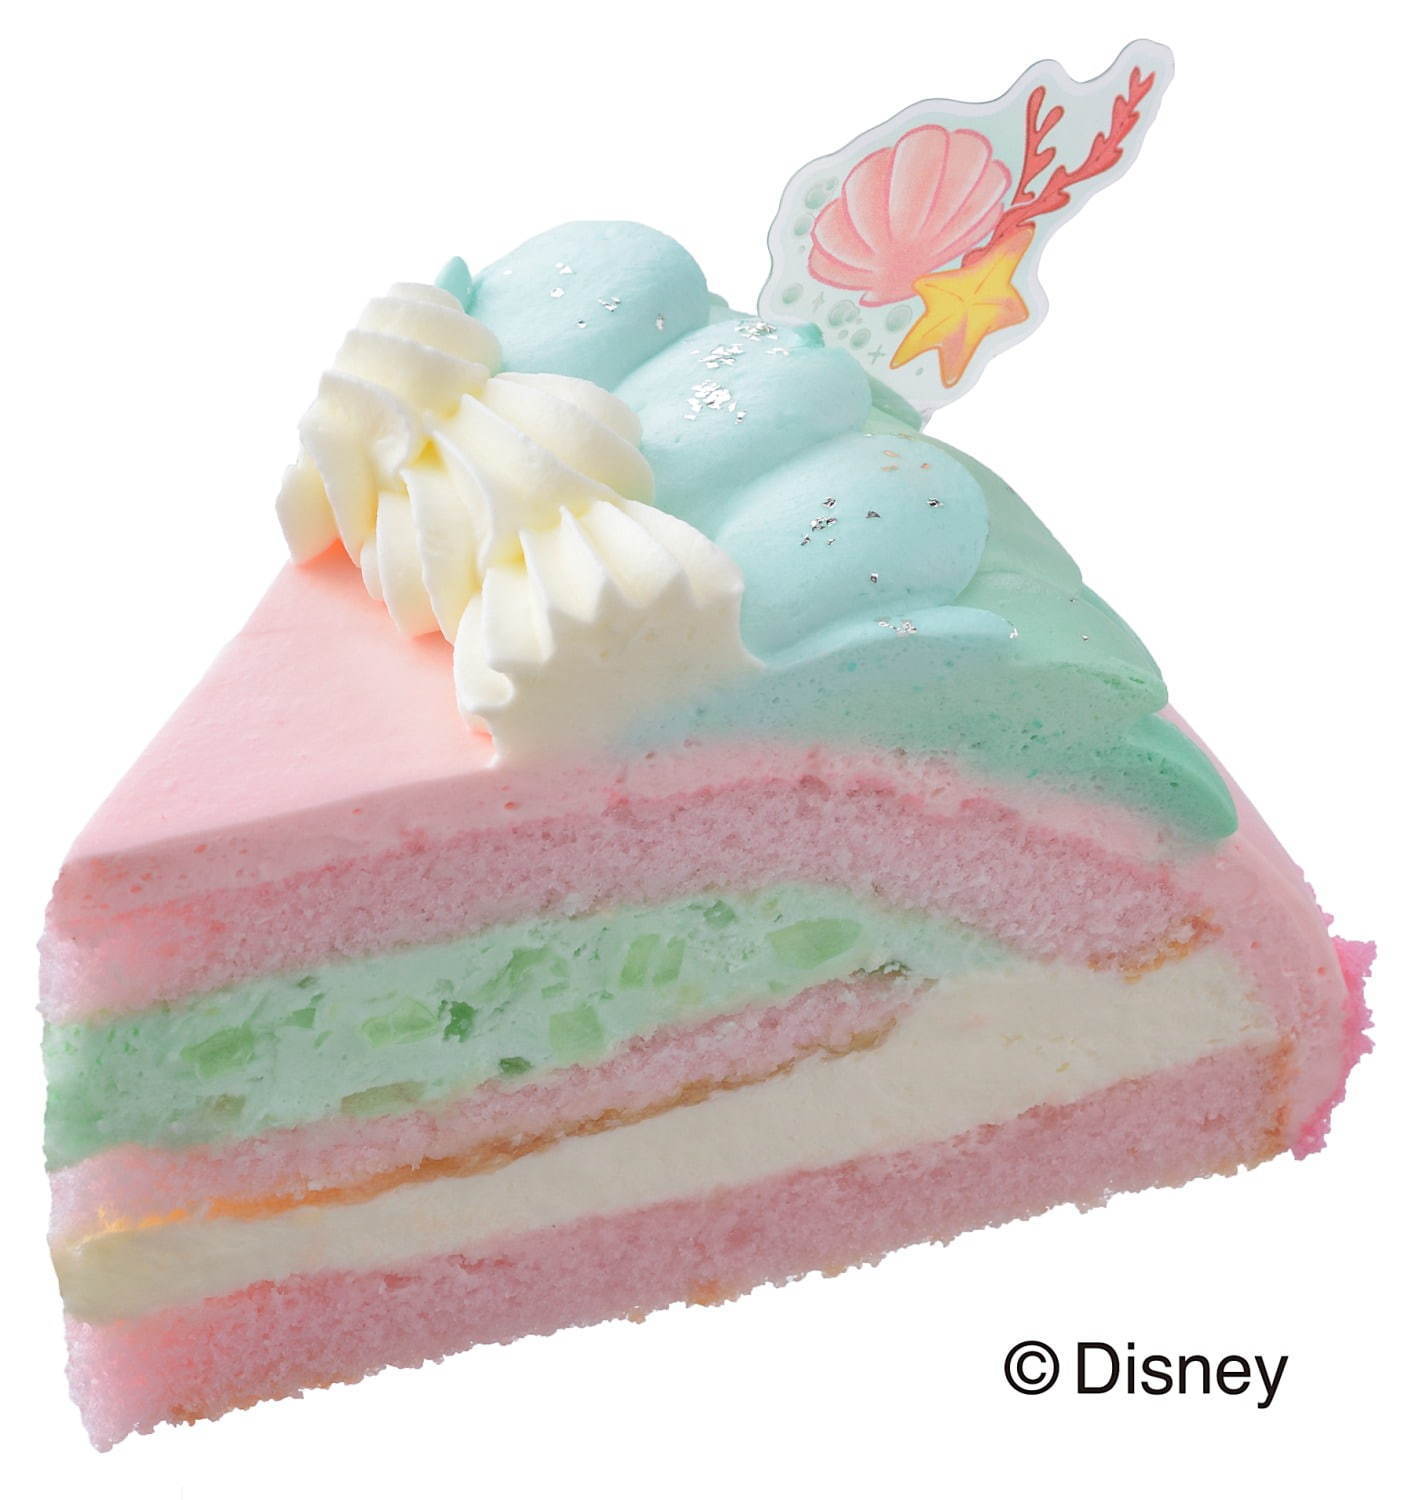 ディズニー リトル マーメイド のデコレーションケーキ 美女と野獣 のプチケーキセット ファッションプレス